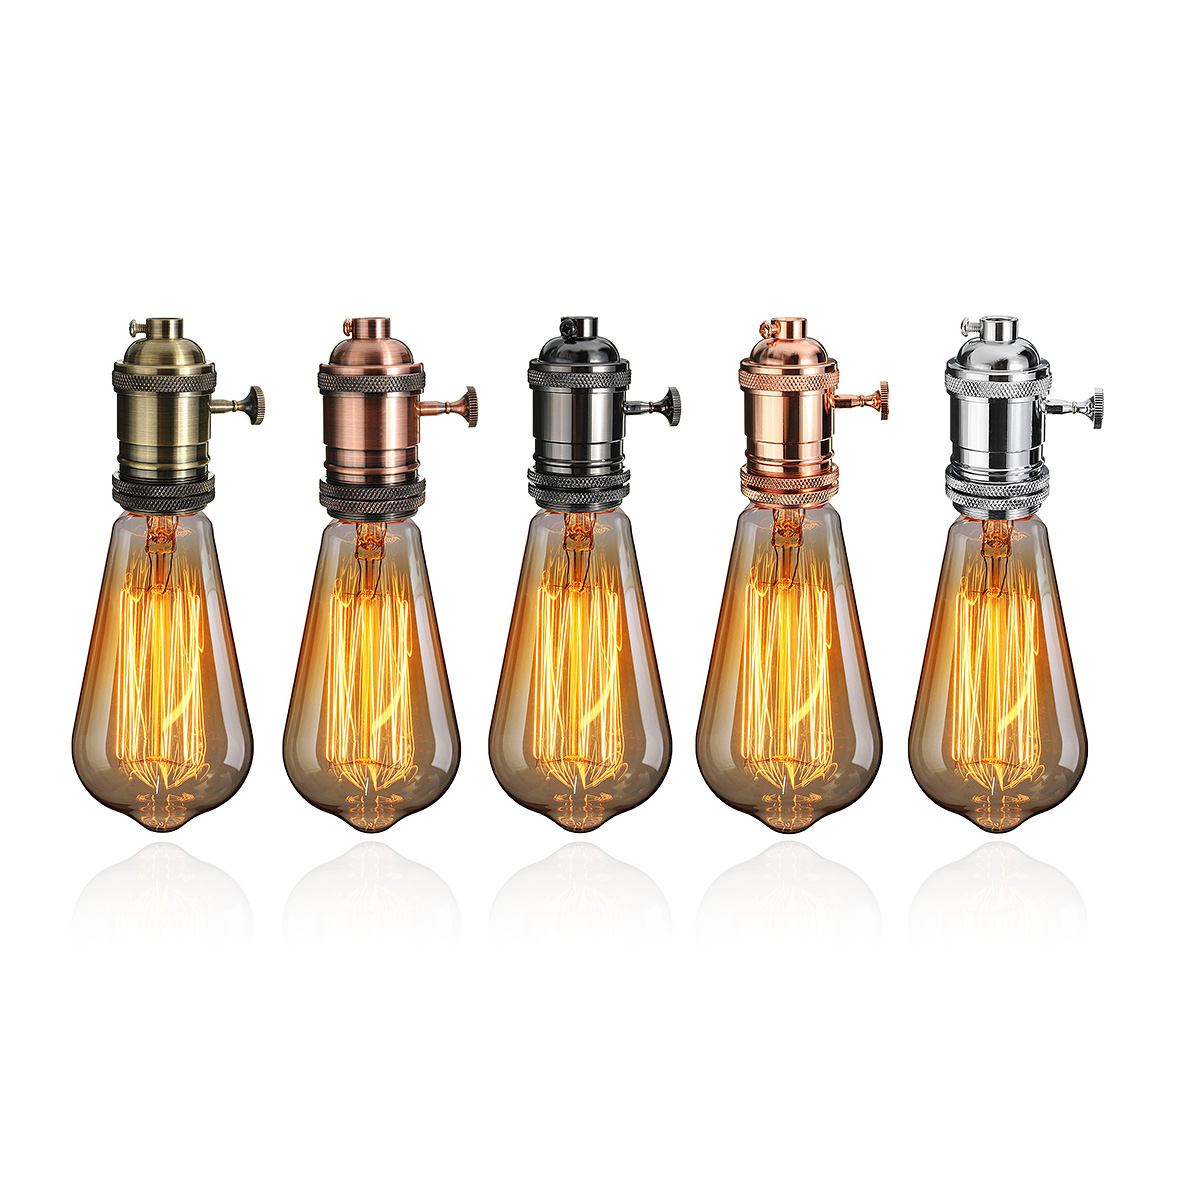 Details about   Retro Pendant lamp holder Light Socket 8 pack Black Edison Aplstar E26 E27 